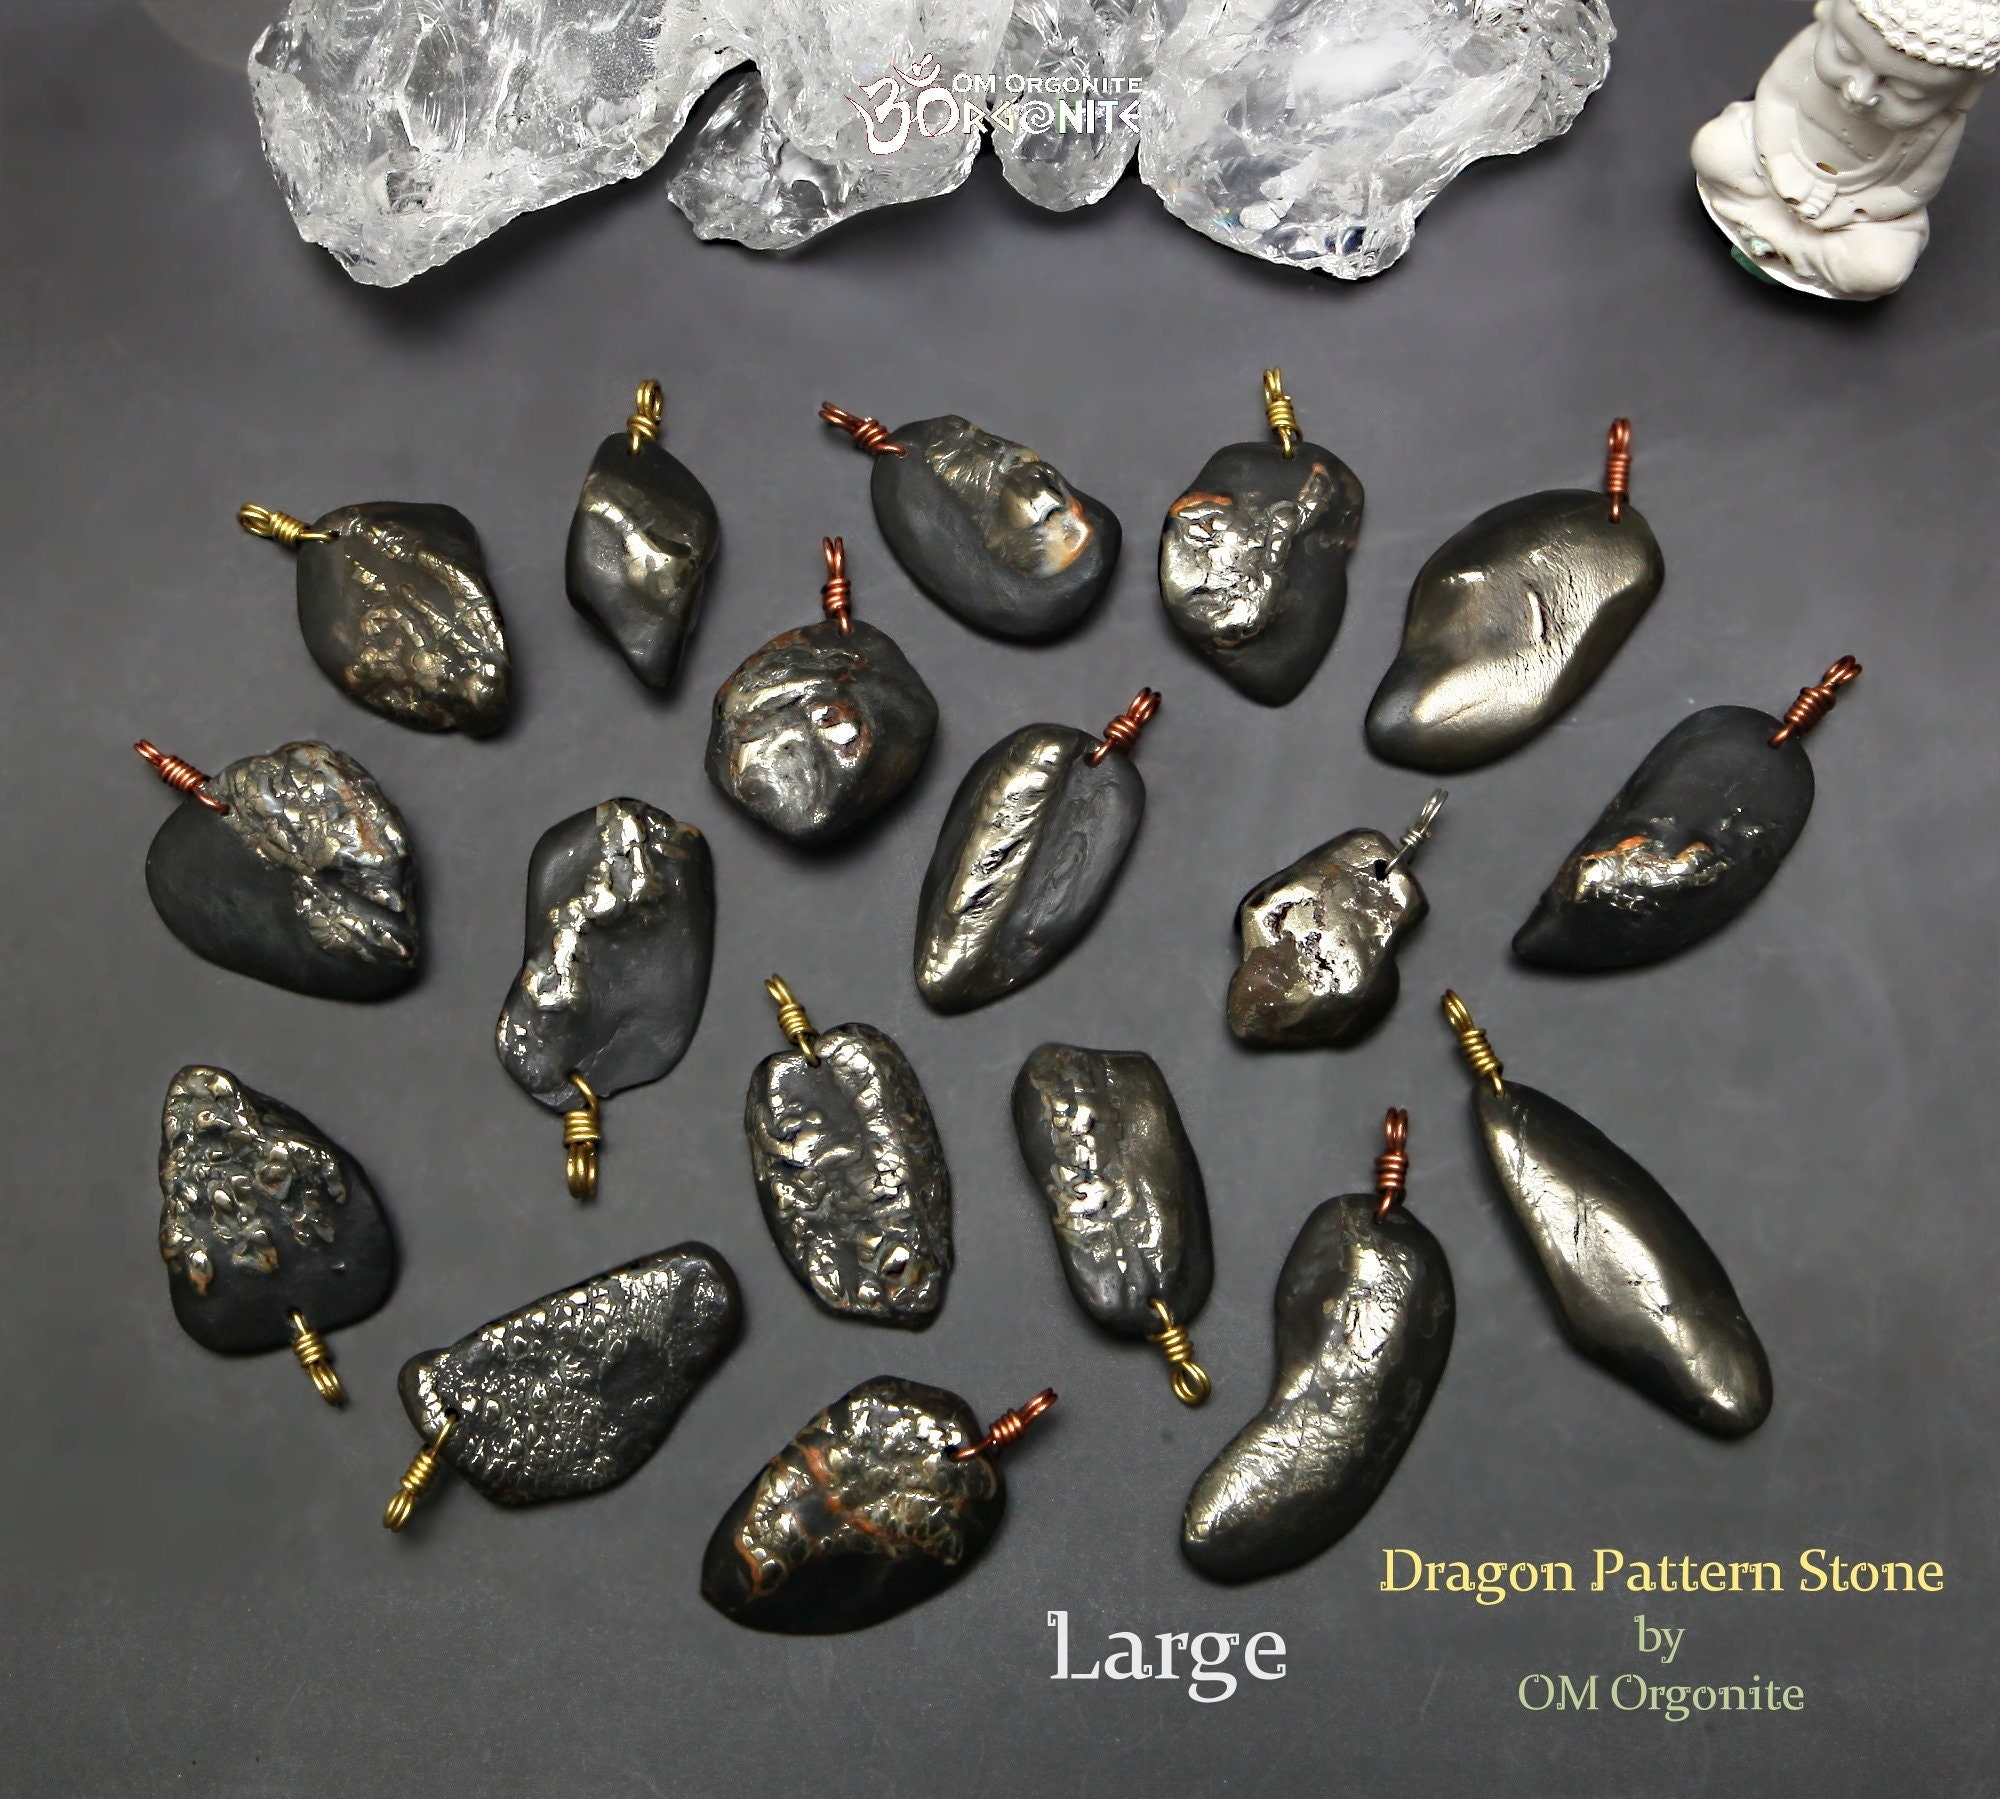 Piedras y joyas de Shungit, por qué de su éxito en la actualidad